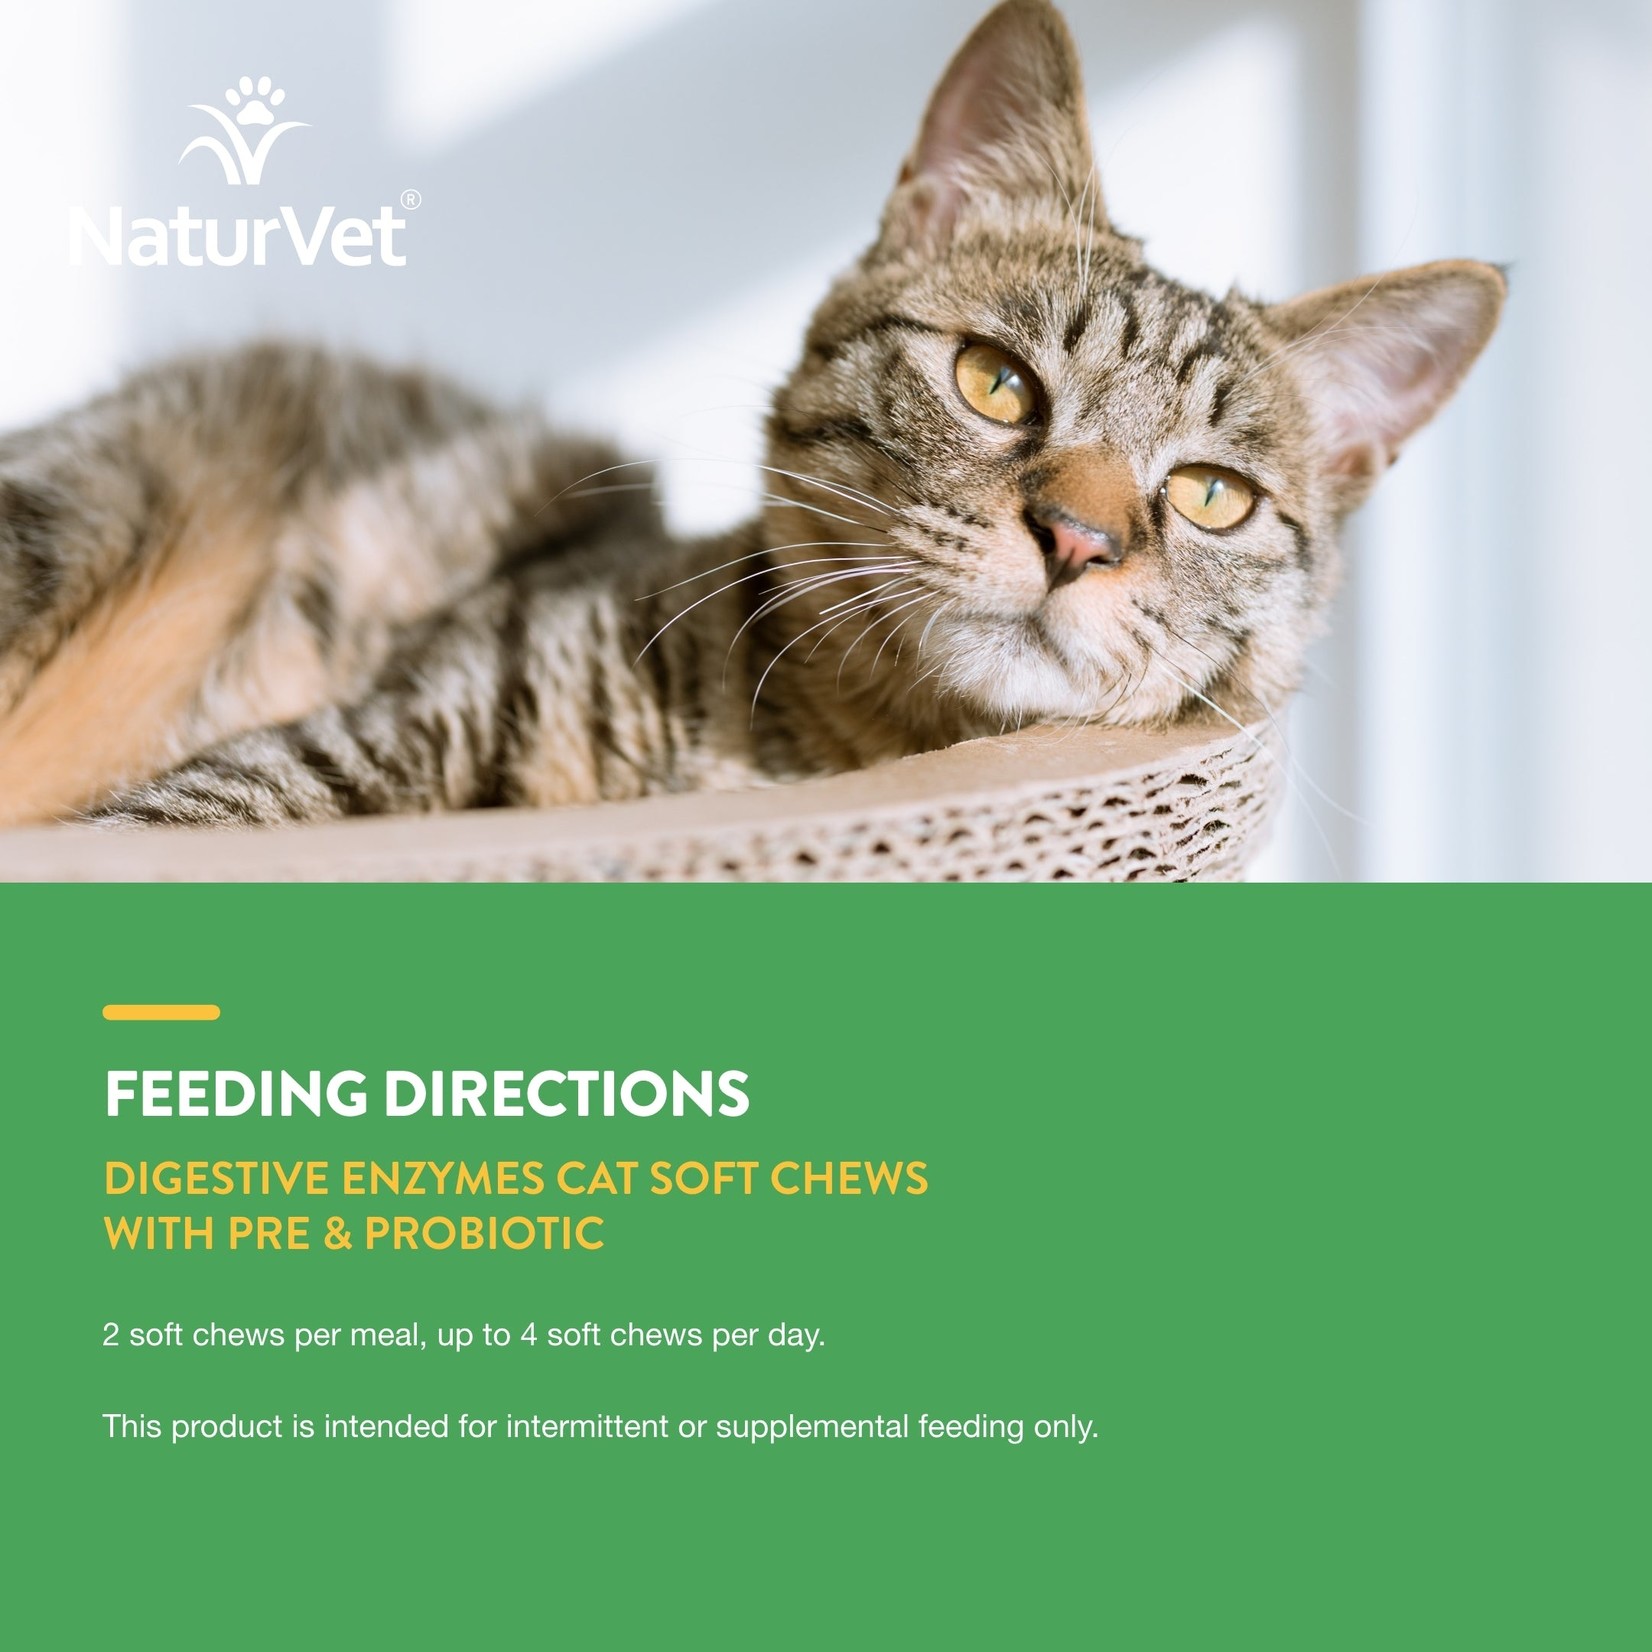 NaturVet NaturVet Cat Soft Chews Digestive Enzymes 60ct Plus Probiotic